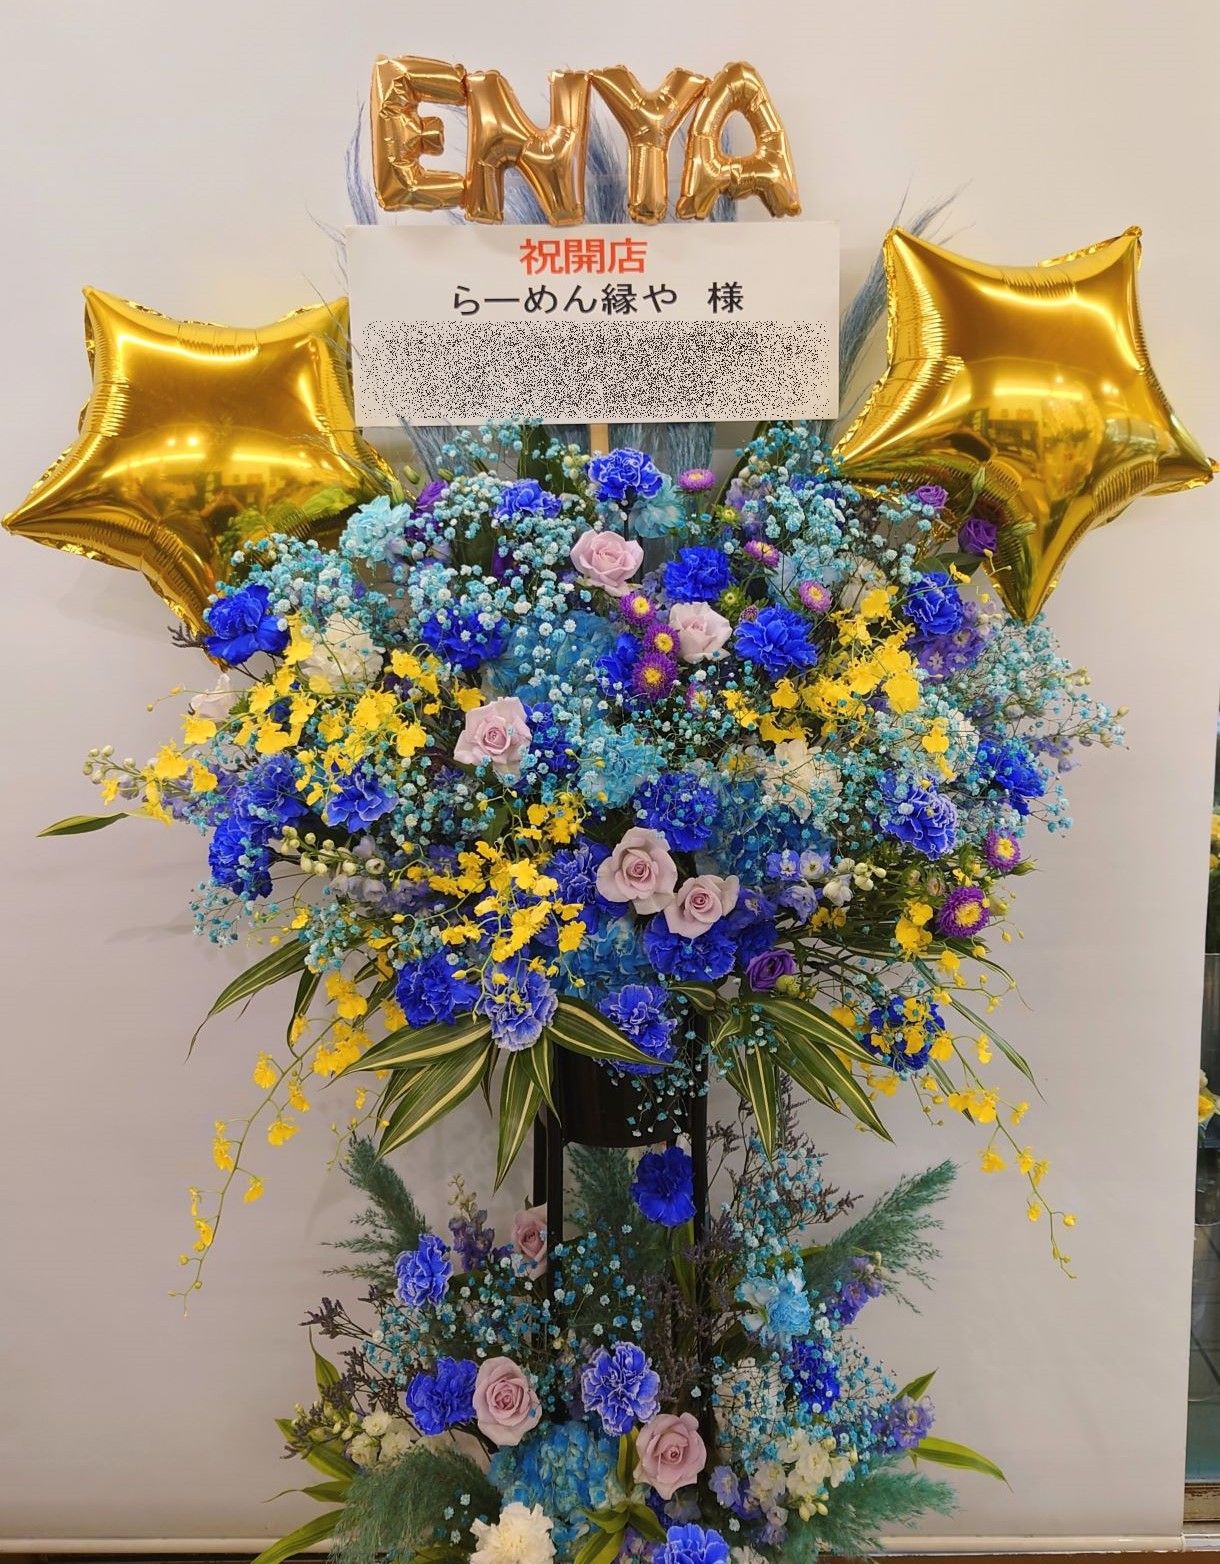 横浜市都筑区センター南へバルーンスタンドを配達しました。【横浜花屋の花束・スタンド花・胡蝶蘭・バルーン・アレンジメント配達事例1053】